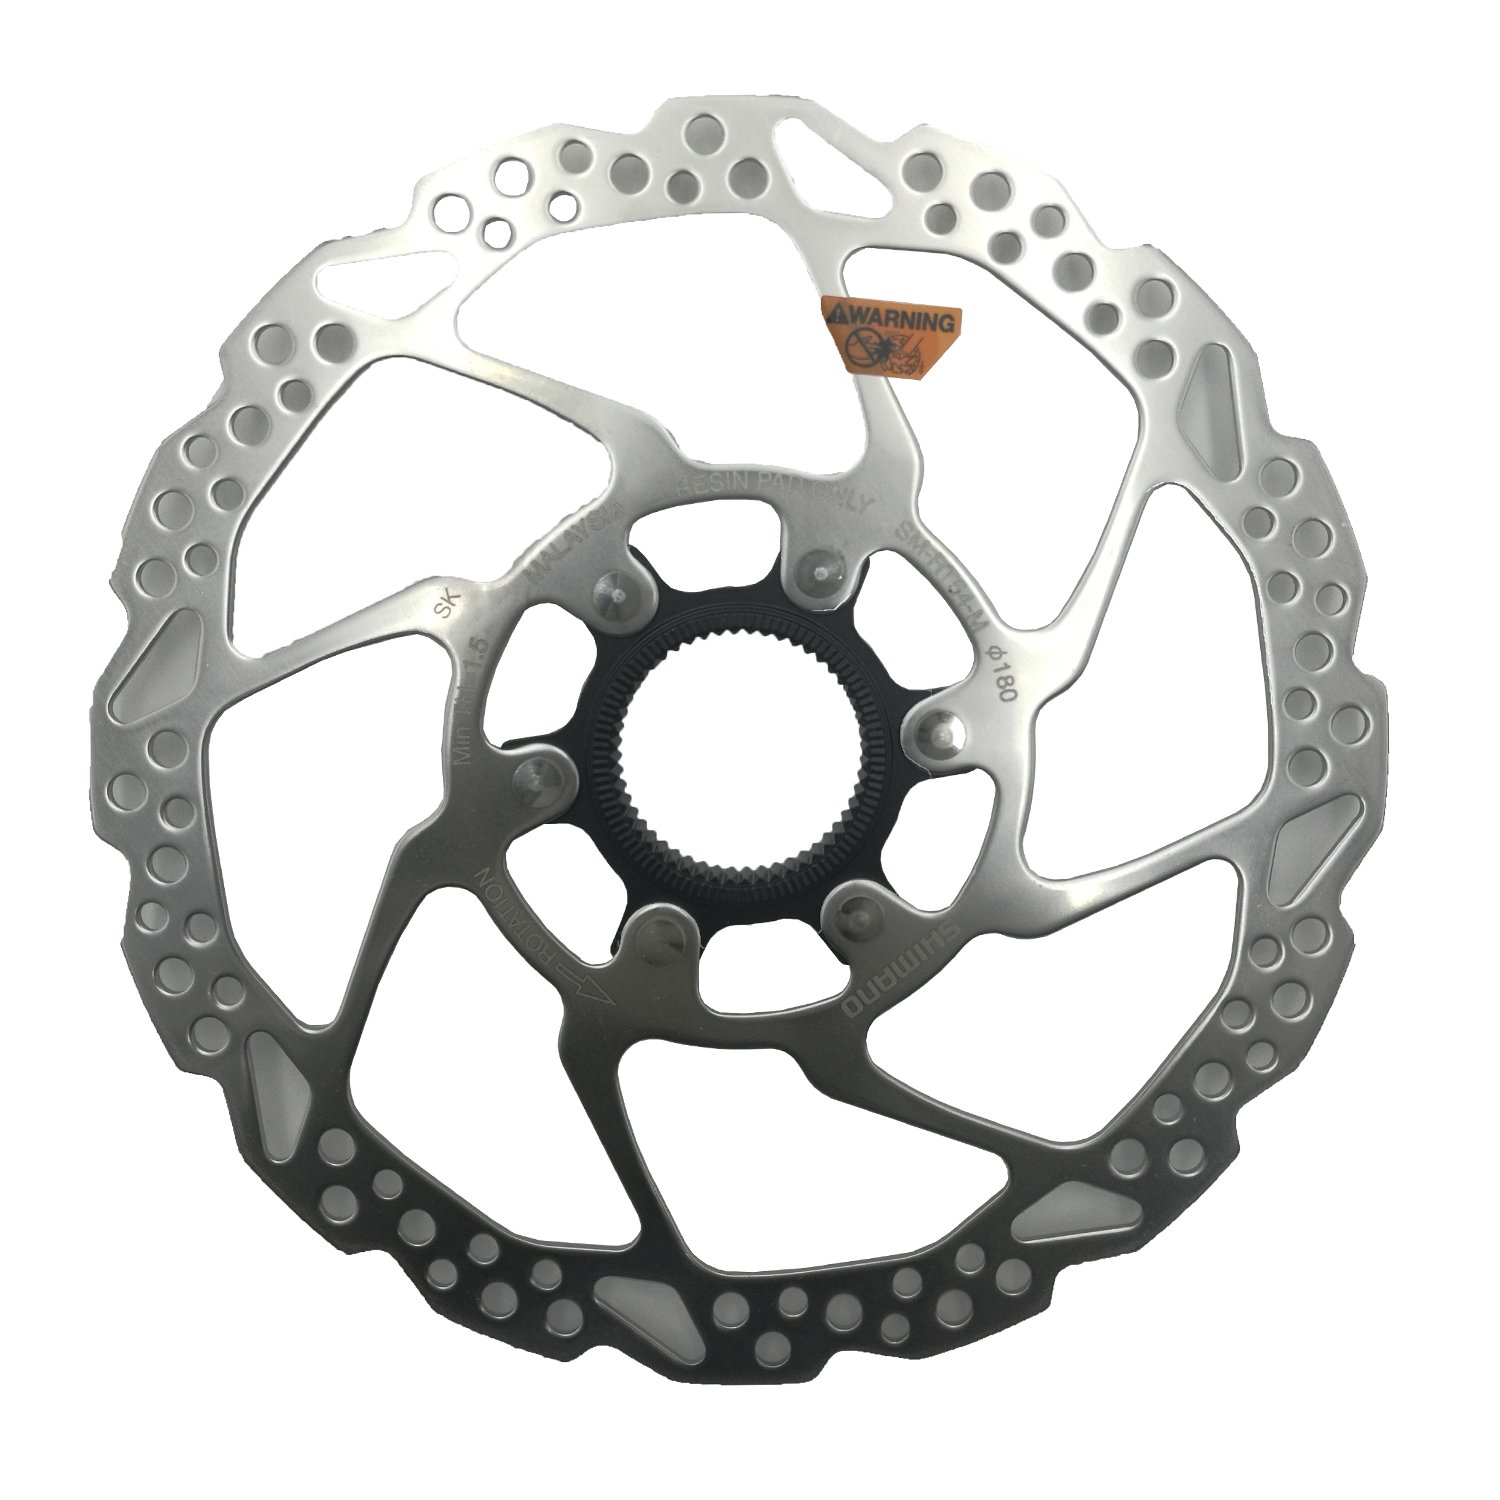 Ротор велосипедный Shimano RT54, 180мм, C.Lock, только для пласт колод ESMRT54M ротор велосипедный shimano rt54 180мм c lock только для пласт колод esmrt54m